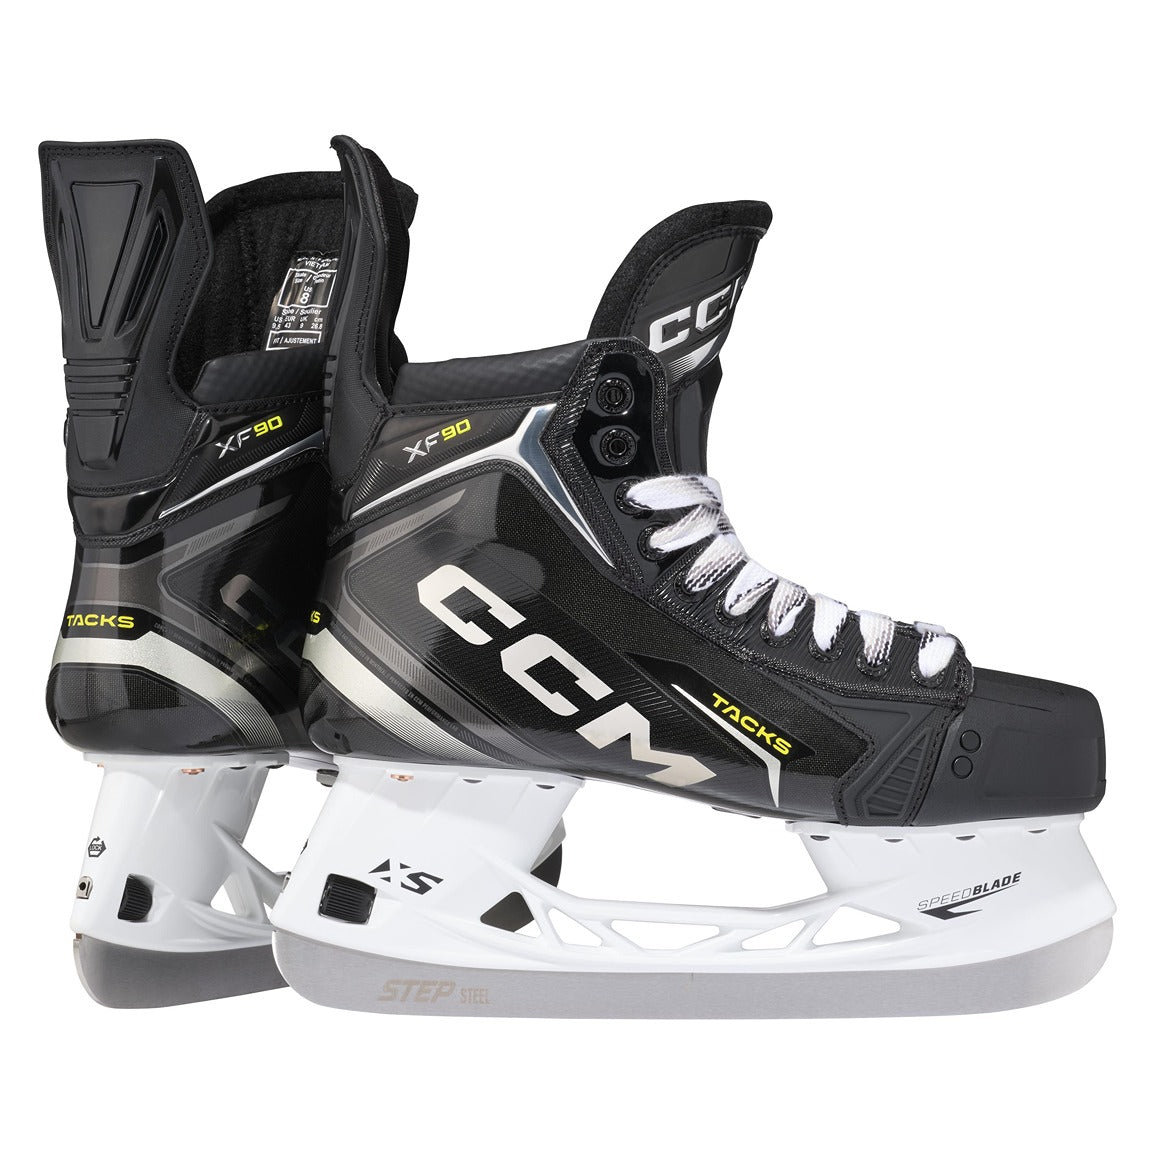 CCM Tacks XF90 Hockey Skates - Senior